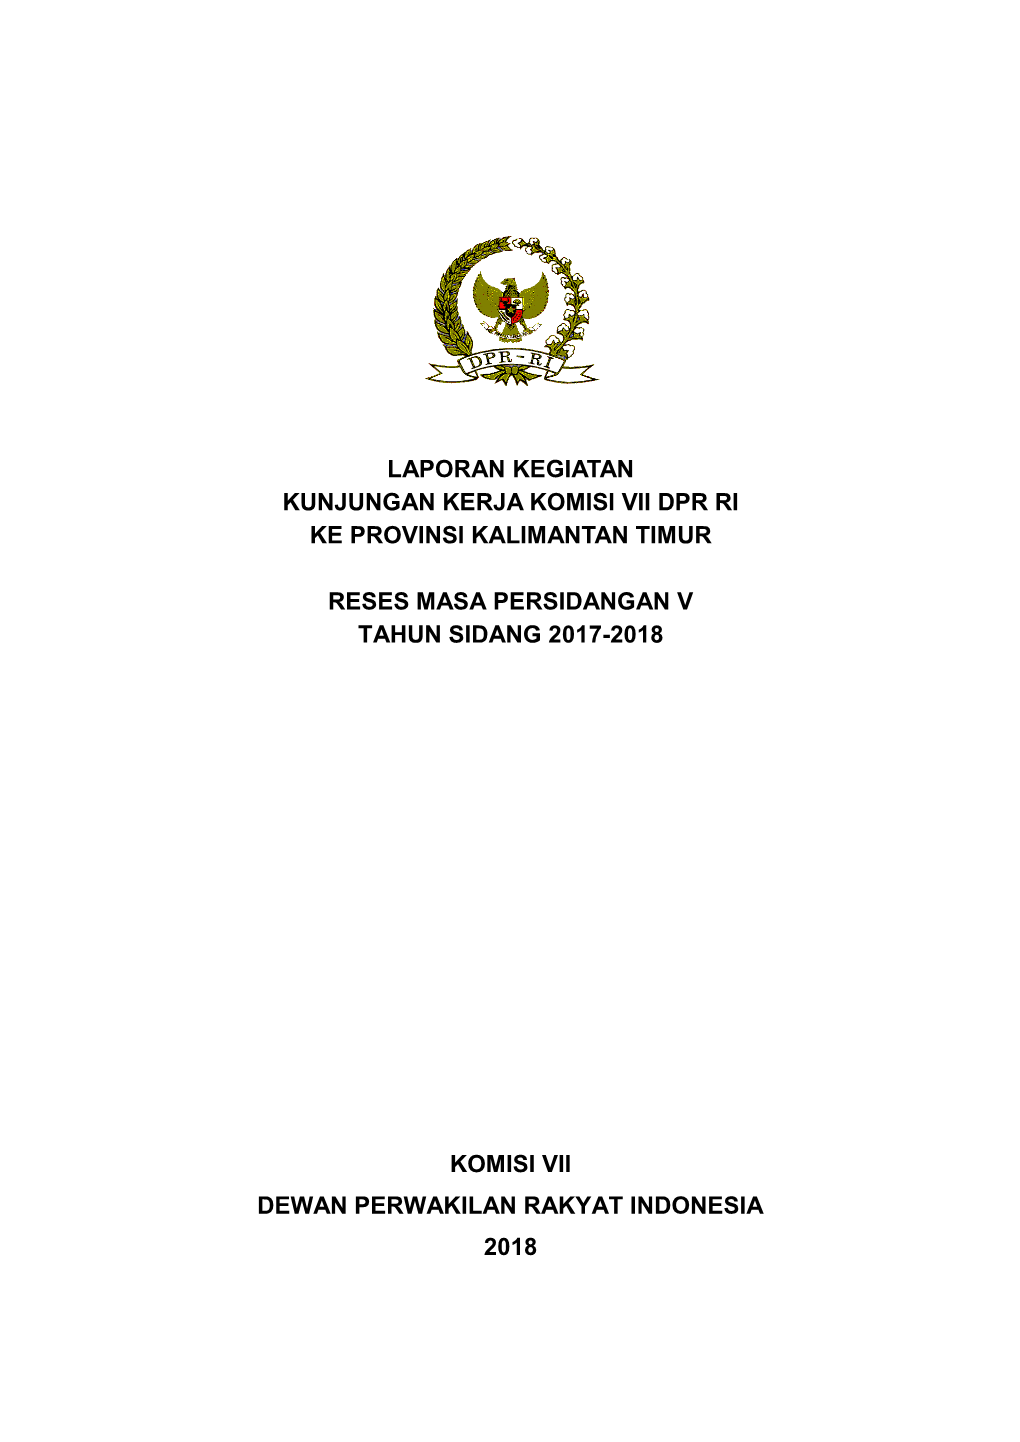 Laporan Kegiatan Kunjungan Kerja Komisi Vii Dpr Ri Ke Provinsi Kalimantan Timur